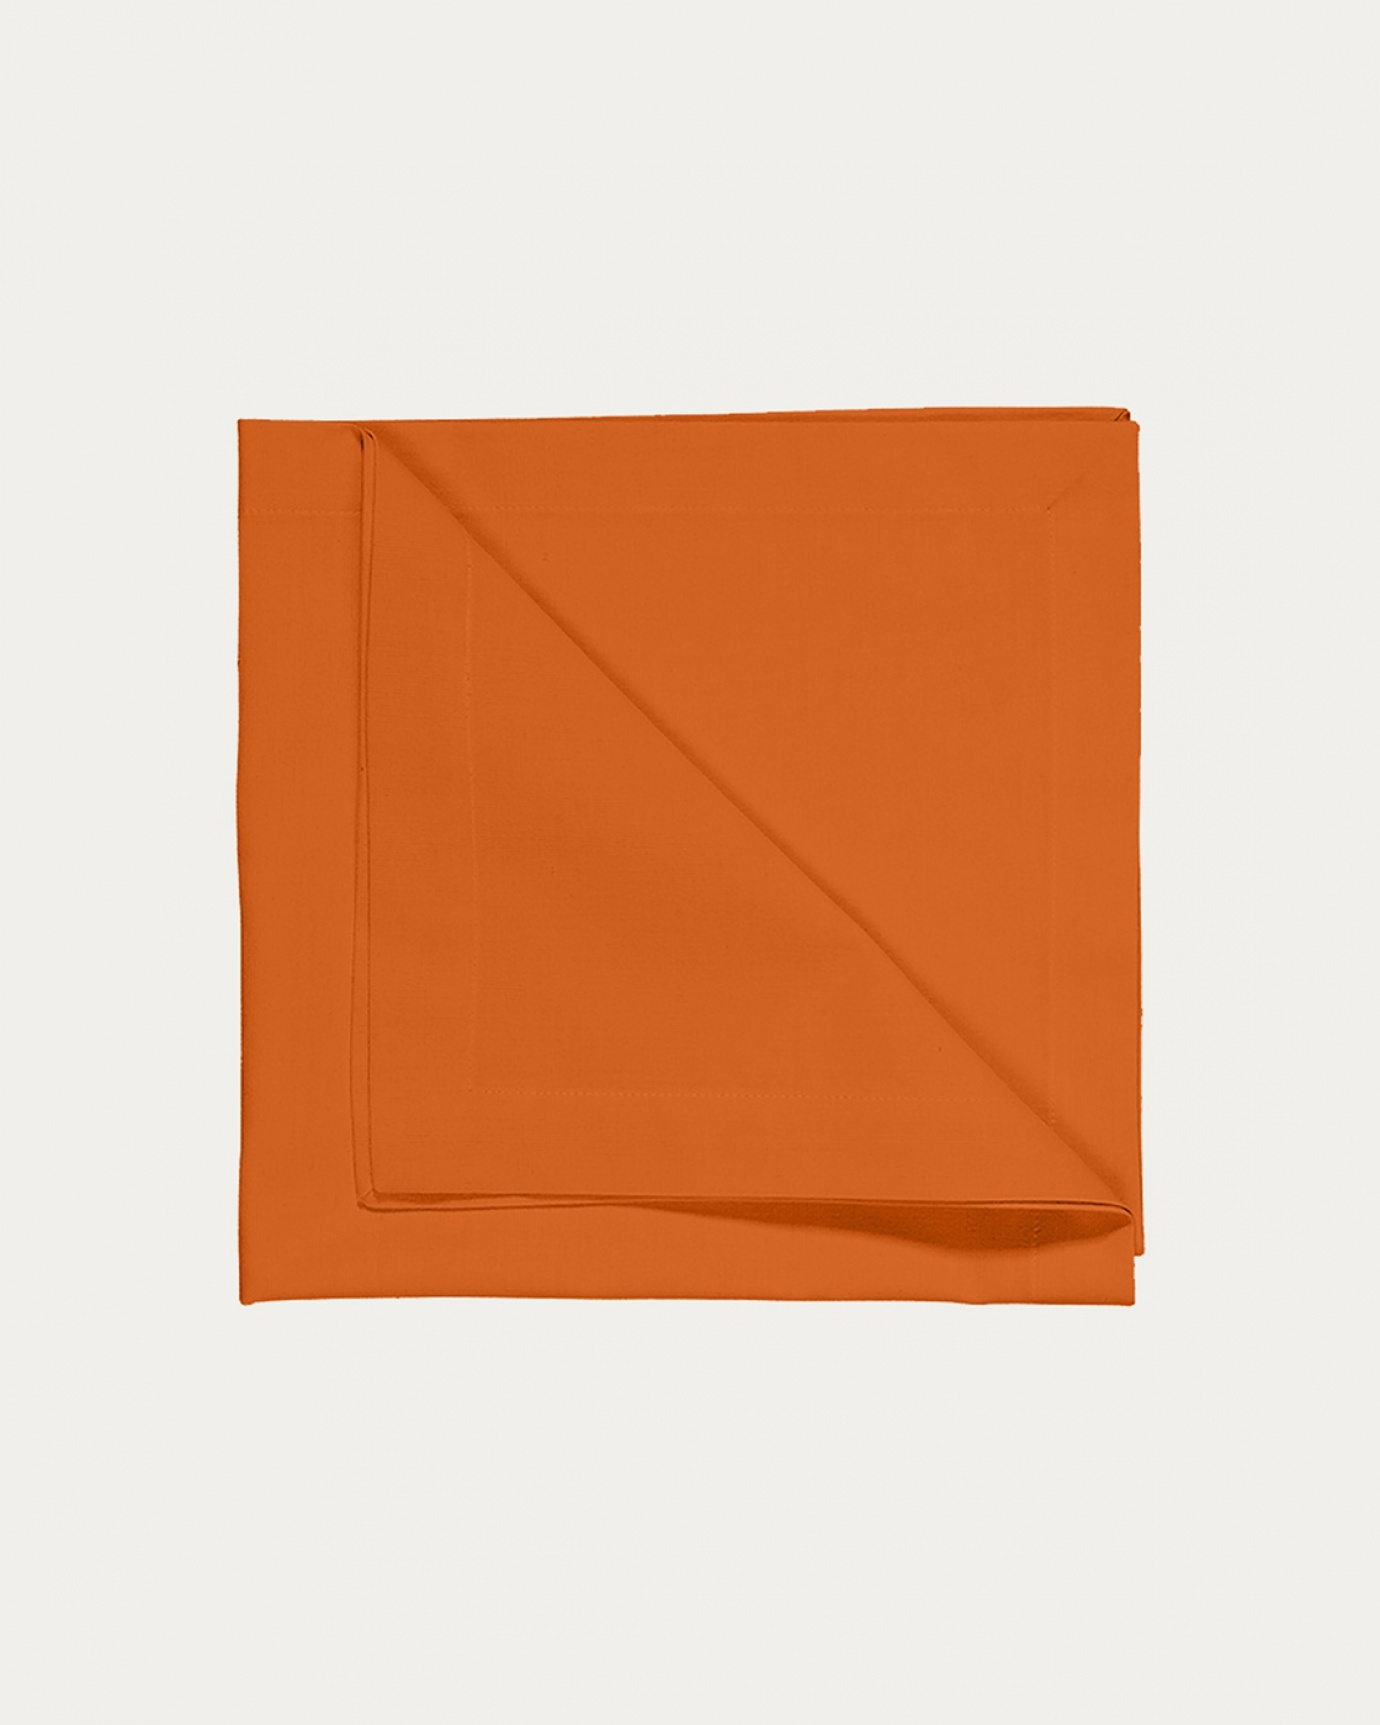 Produktbild orange ROBERT servett av mjuk bomull från LINUM DESIGN. Storlek 45x45 cm och säljs i 4 pack.